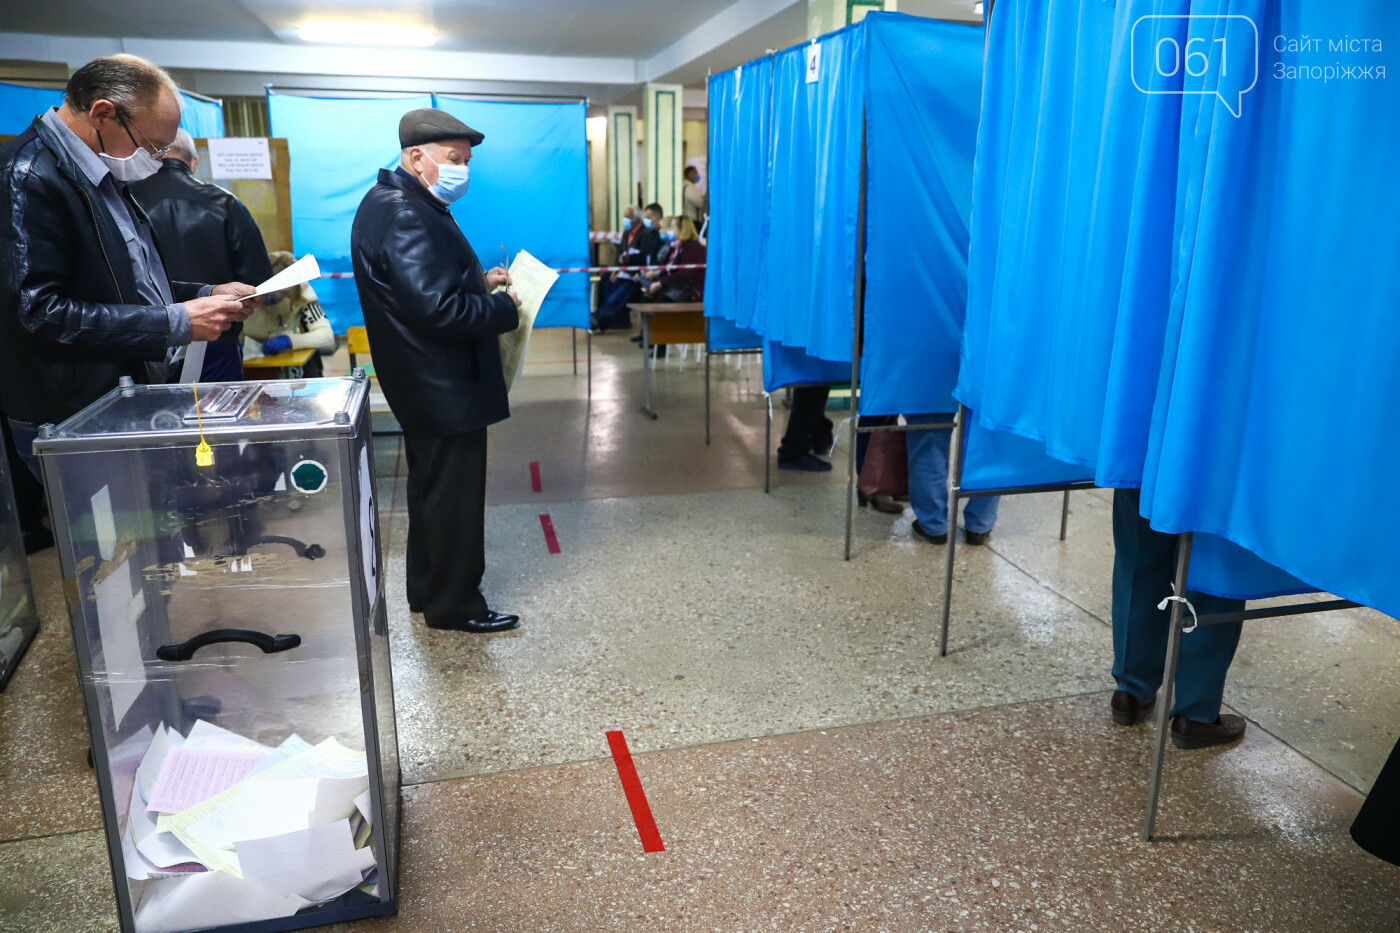 Выборы в условиях карантина: как запорожцы выбирают мэра и депутатов, - ФОТОРЕПОРТАЖ, фото-43